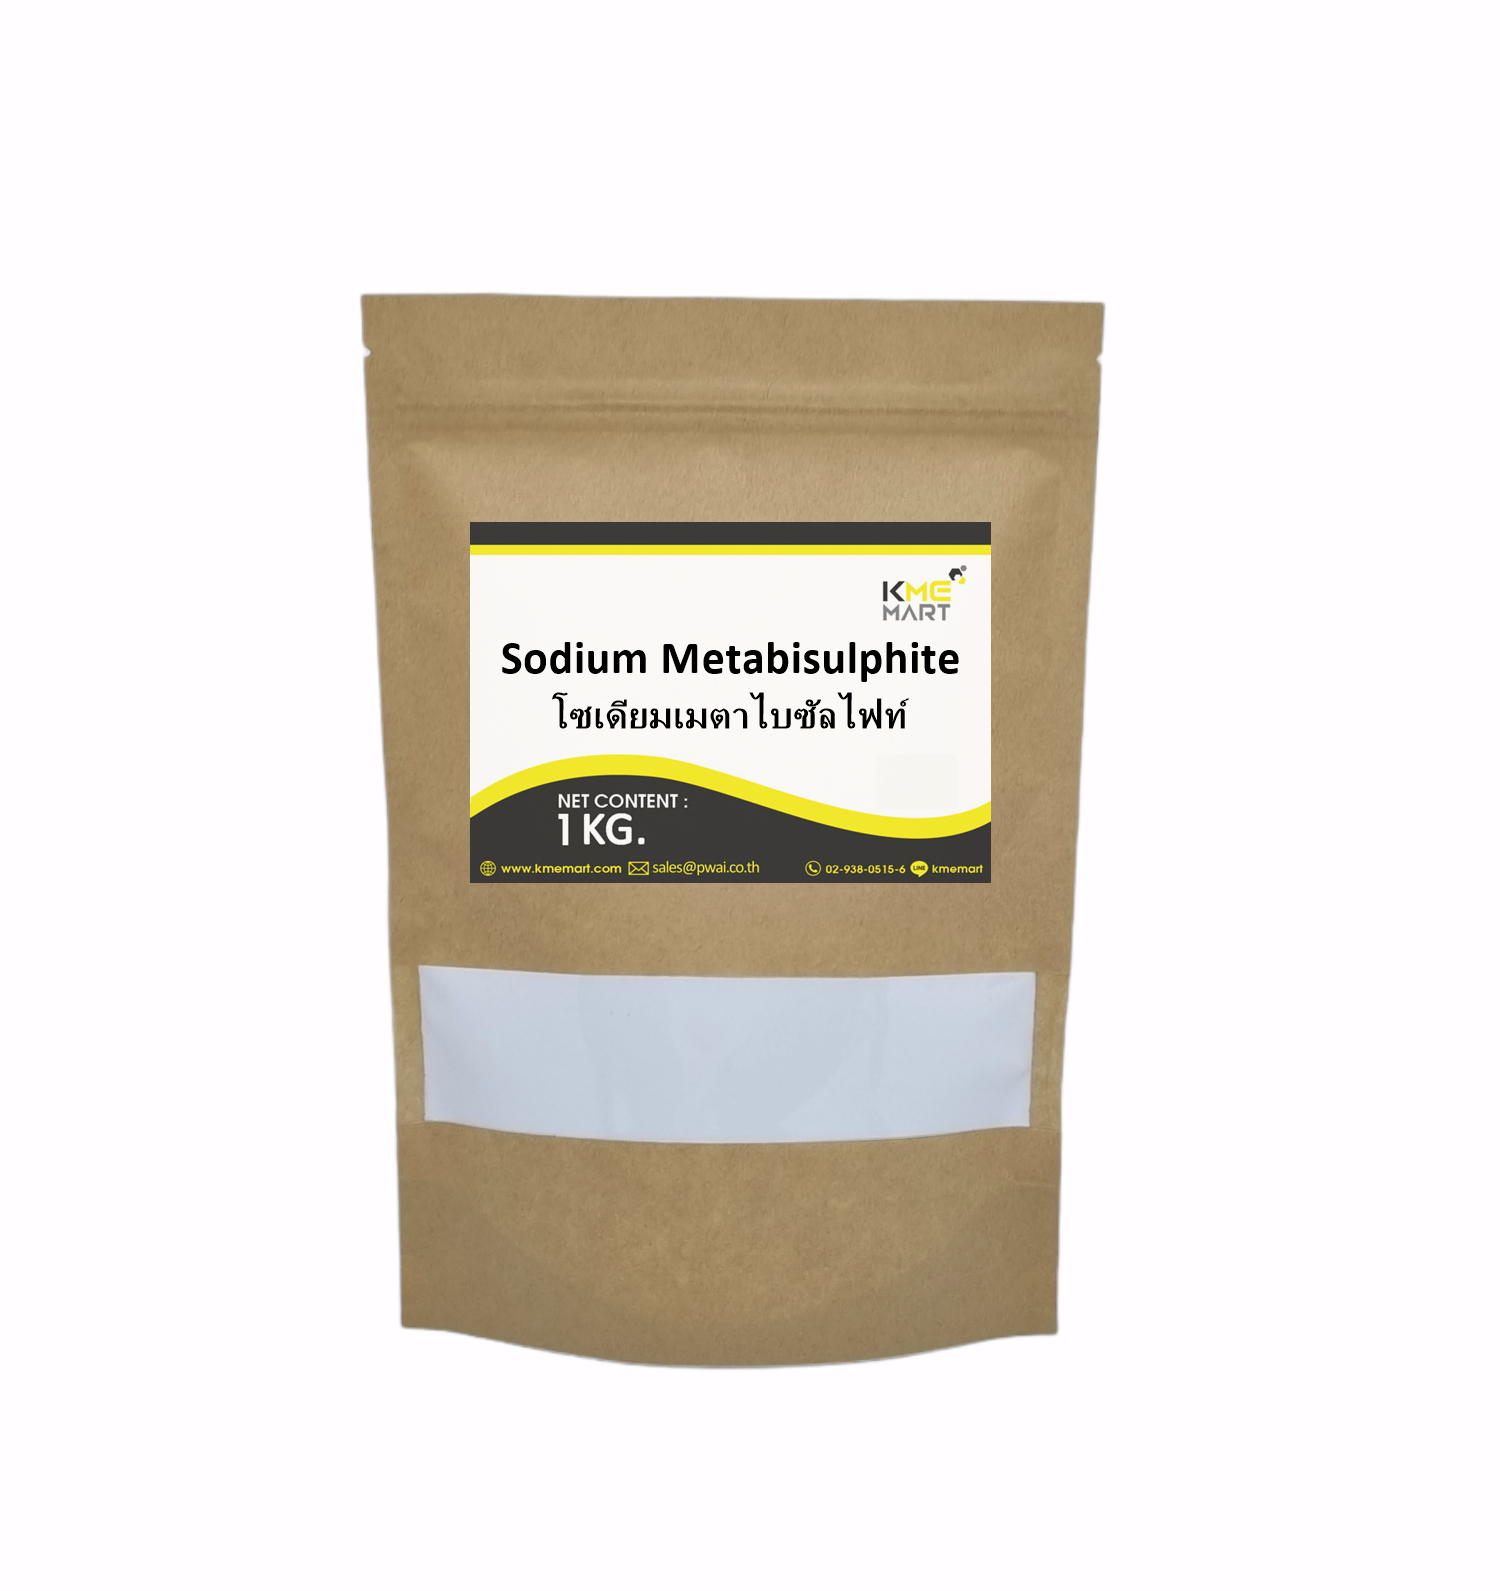 สารฟอกขาว โซเดียม เมต้าไบซัลไฟต์ Sodium Metabisulphite / Sodium Metabisulfite - 1 กิโลกรัม